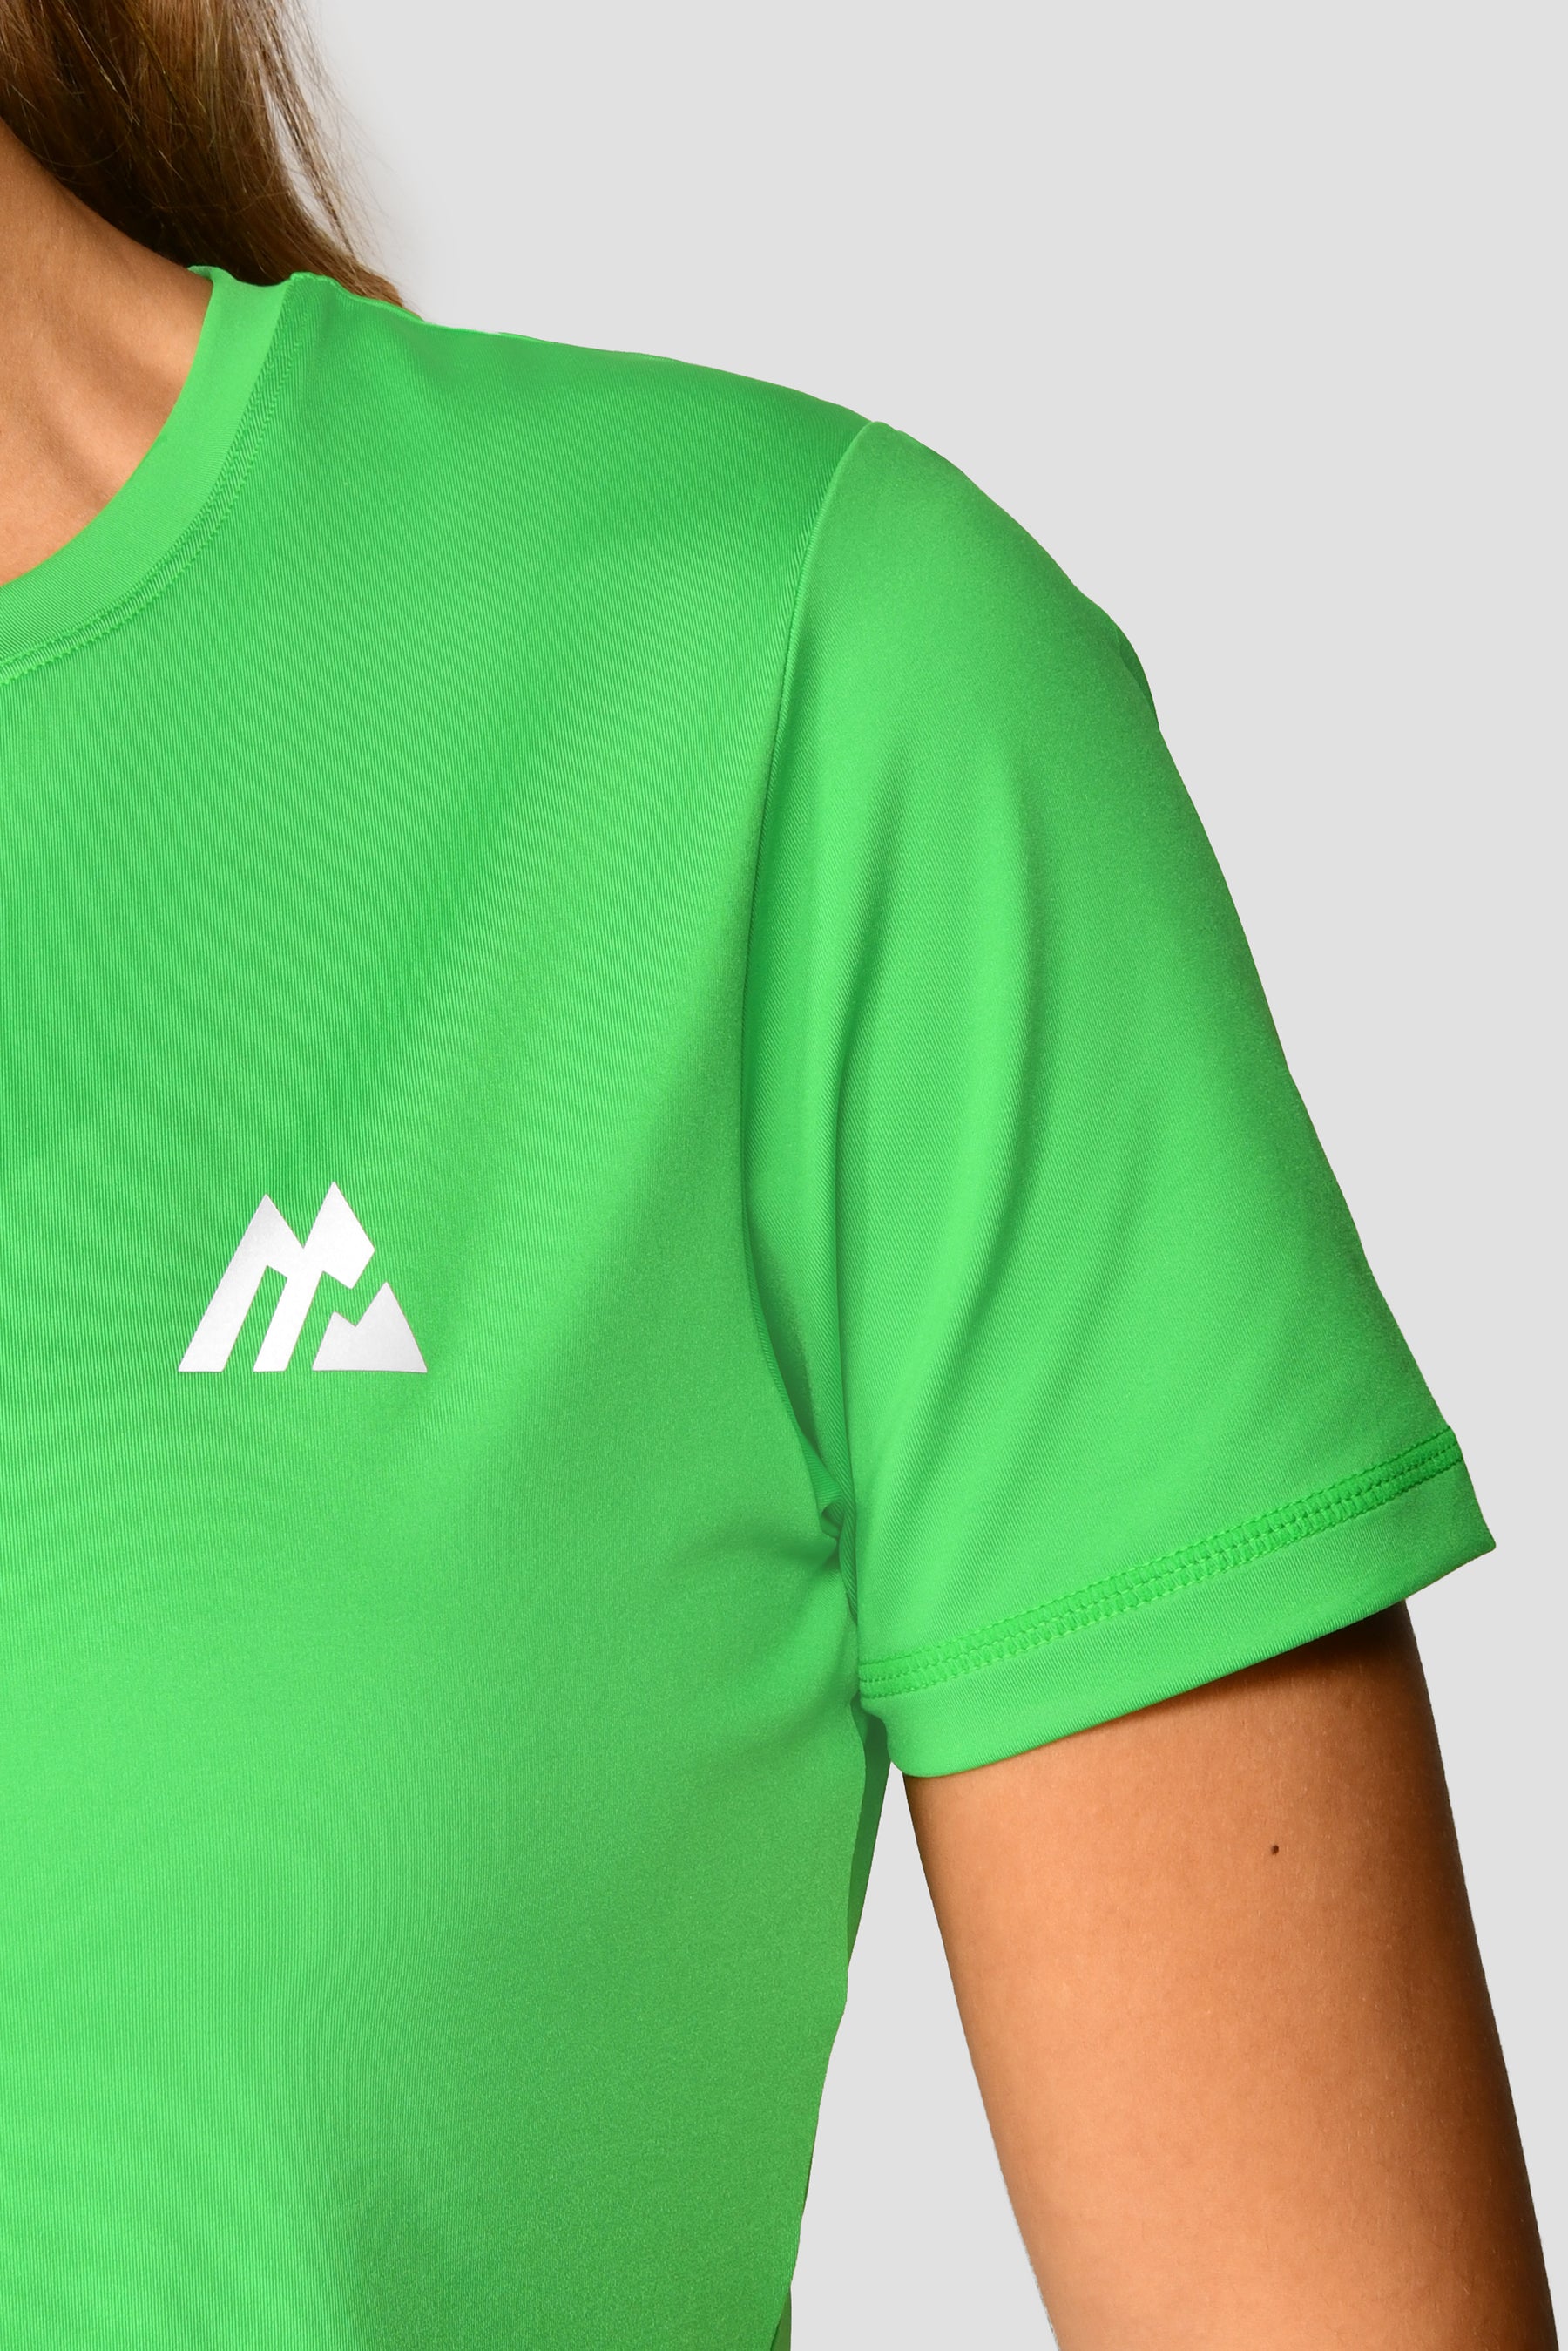 Adapt Running T-Shirt - Jaida Green